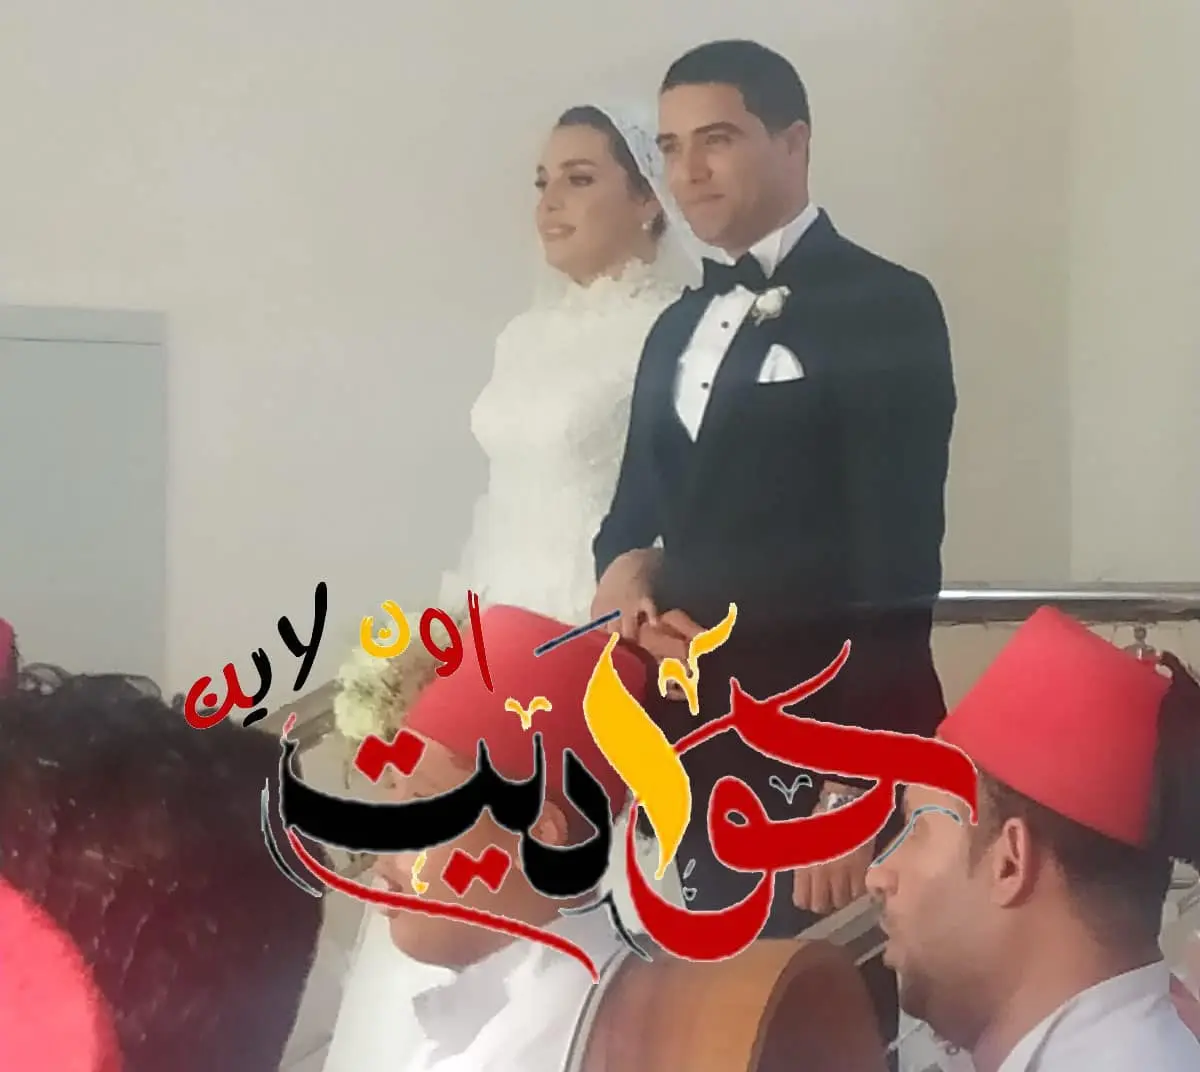 ألف مبروك الزفاف السعيد .. رائد طيار خالد ادريس والدكتورة ايمان الفقى